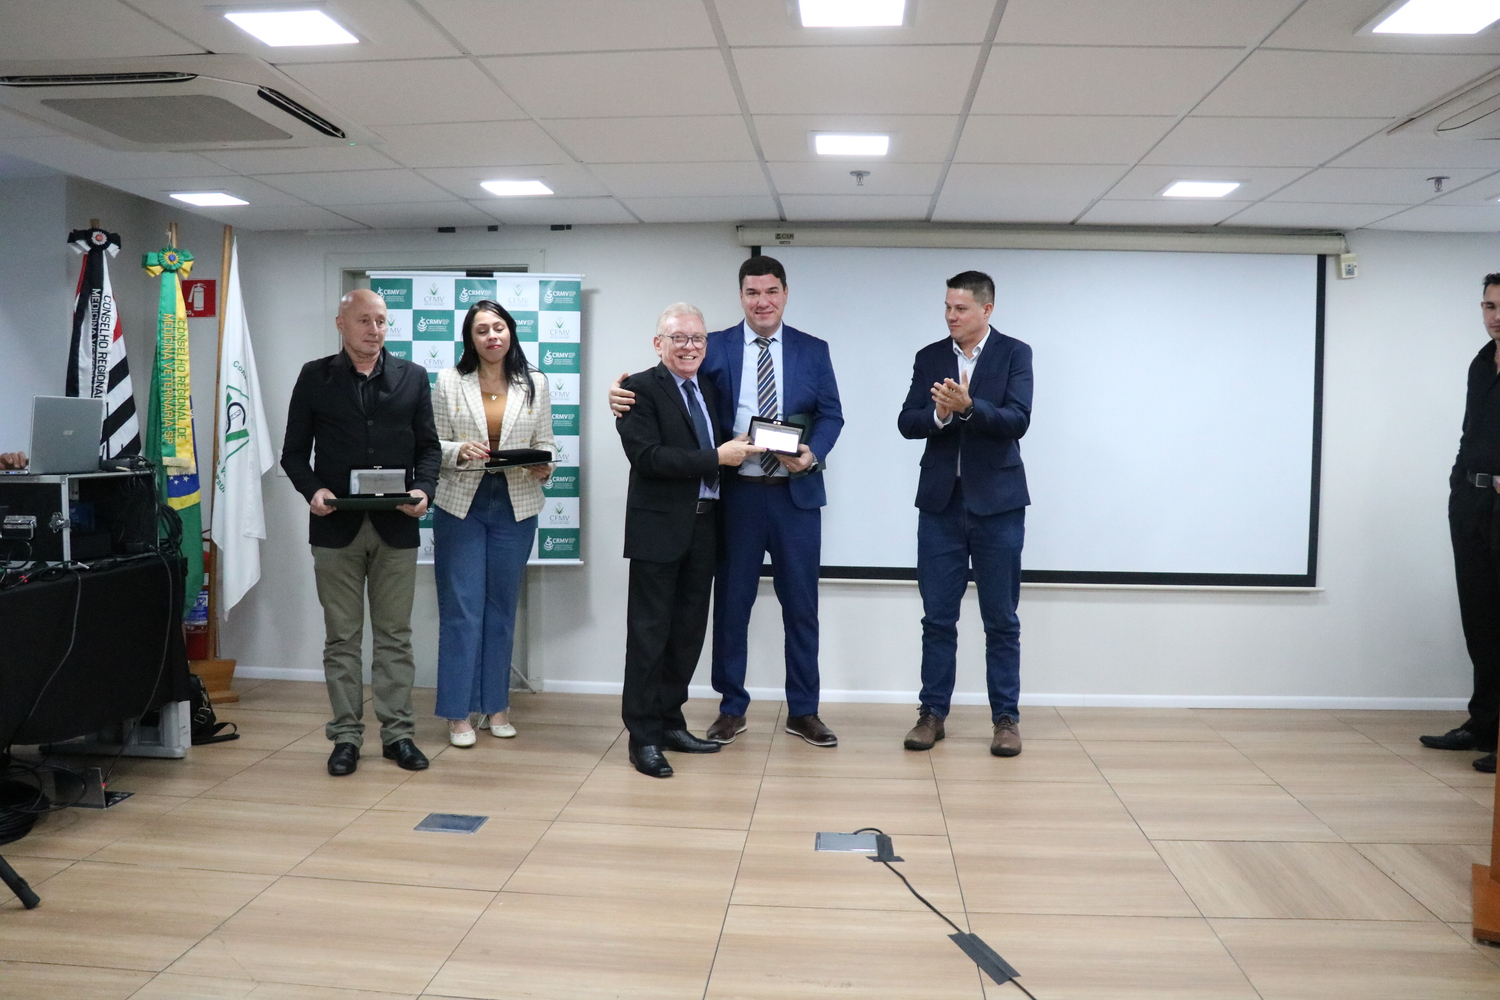 O presidente do CRMV-SP entrega placa a um dos médicos-veterinários homenageados pelo trabalho realizado no Rio Grande do Sul em auxílio ao Regional gaúcho.